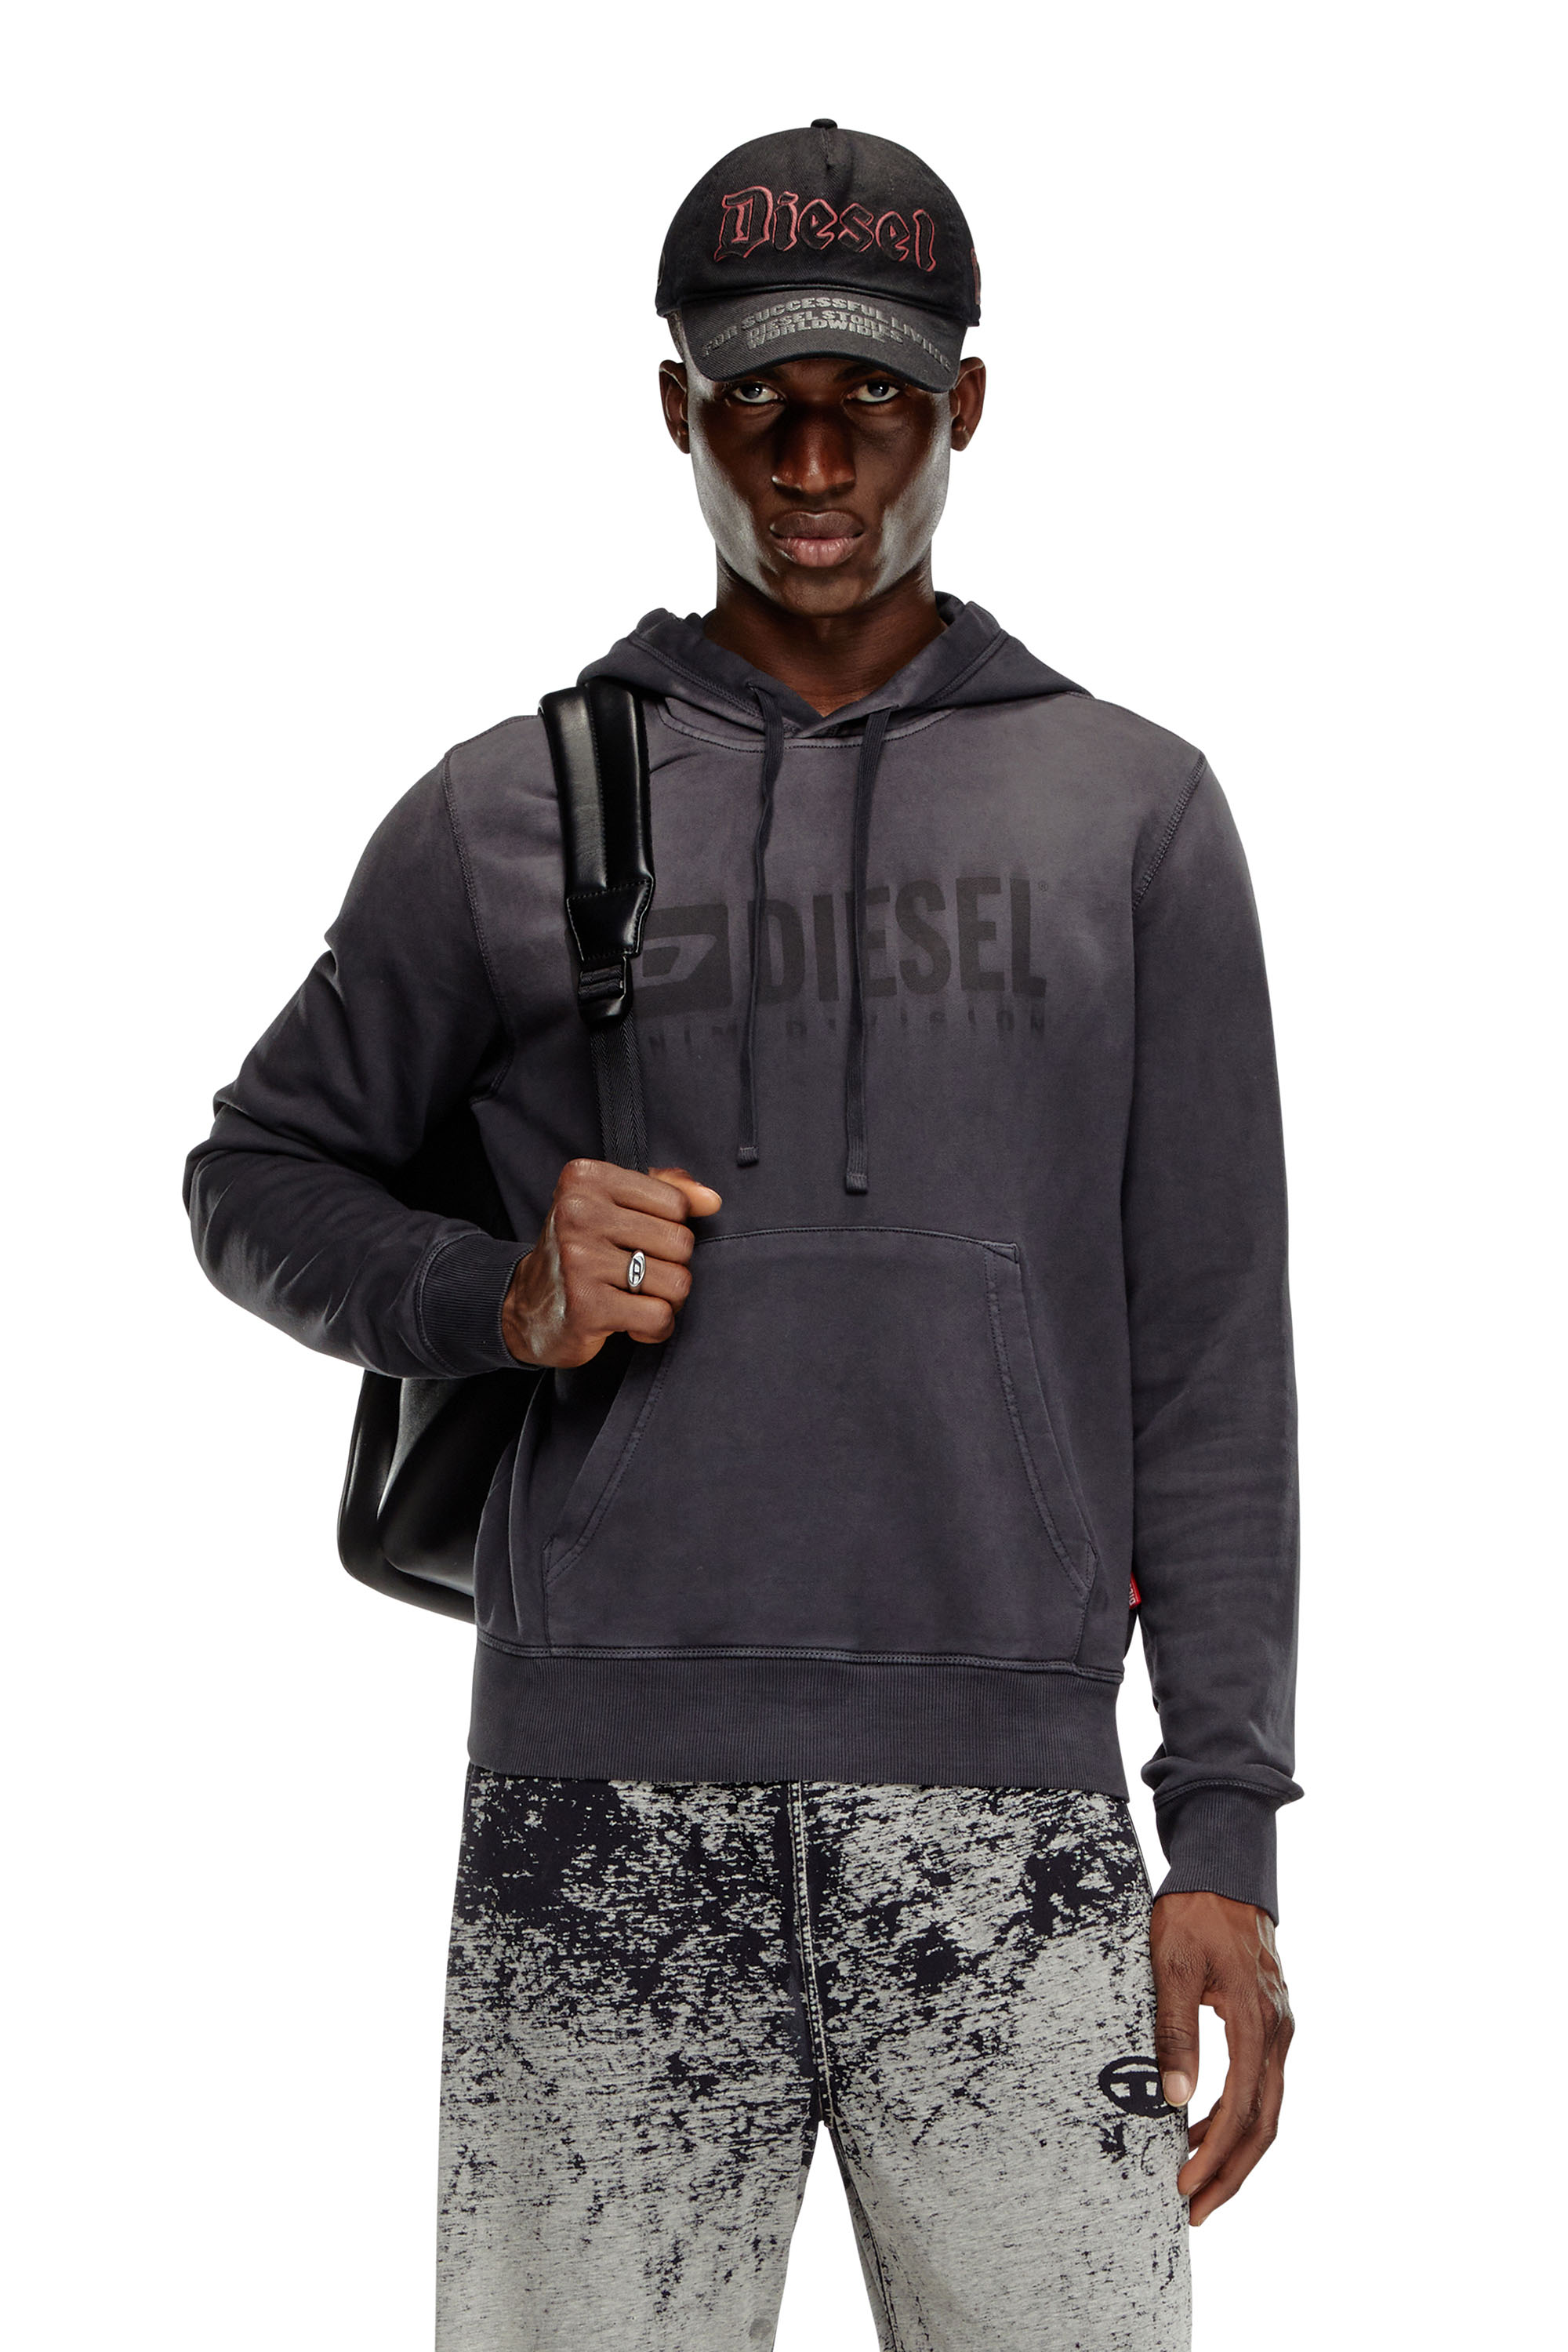 Diesel - S-GINN-HOOD-K44, Man Faded hoodie with Denim Division logo in Black - Image 1